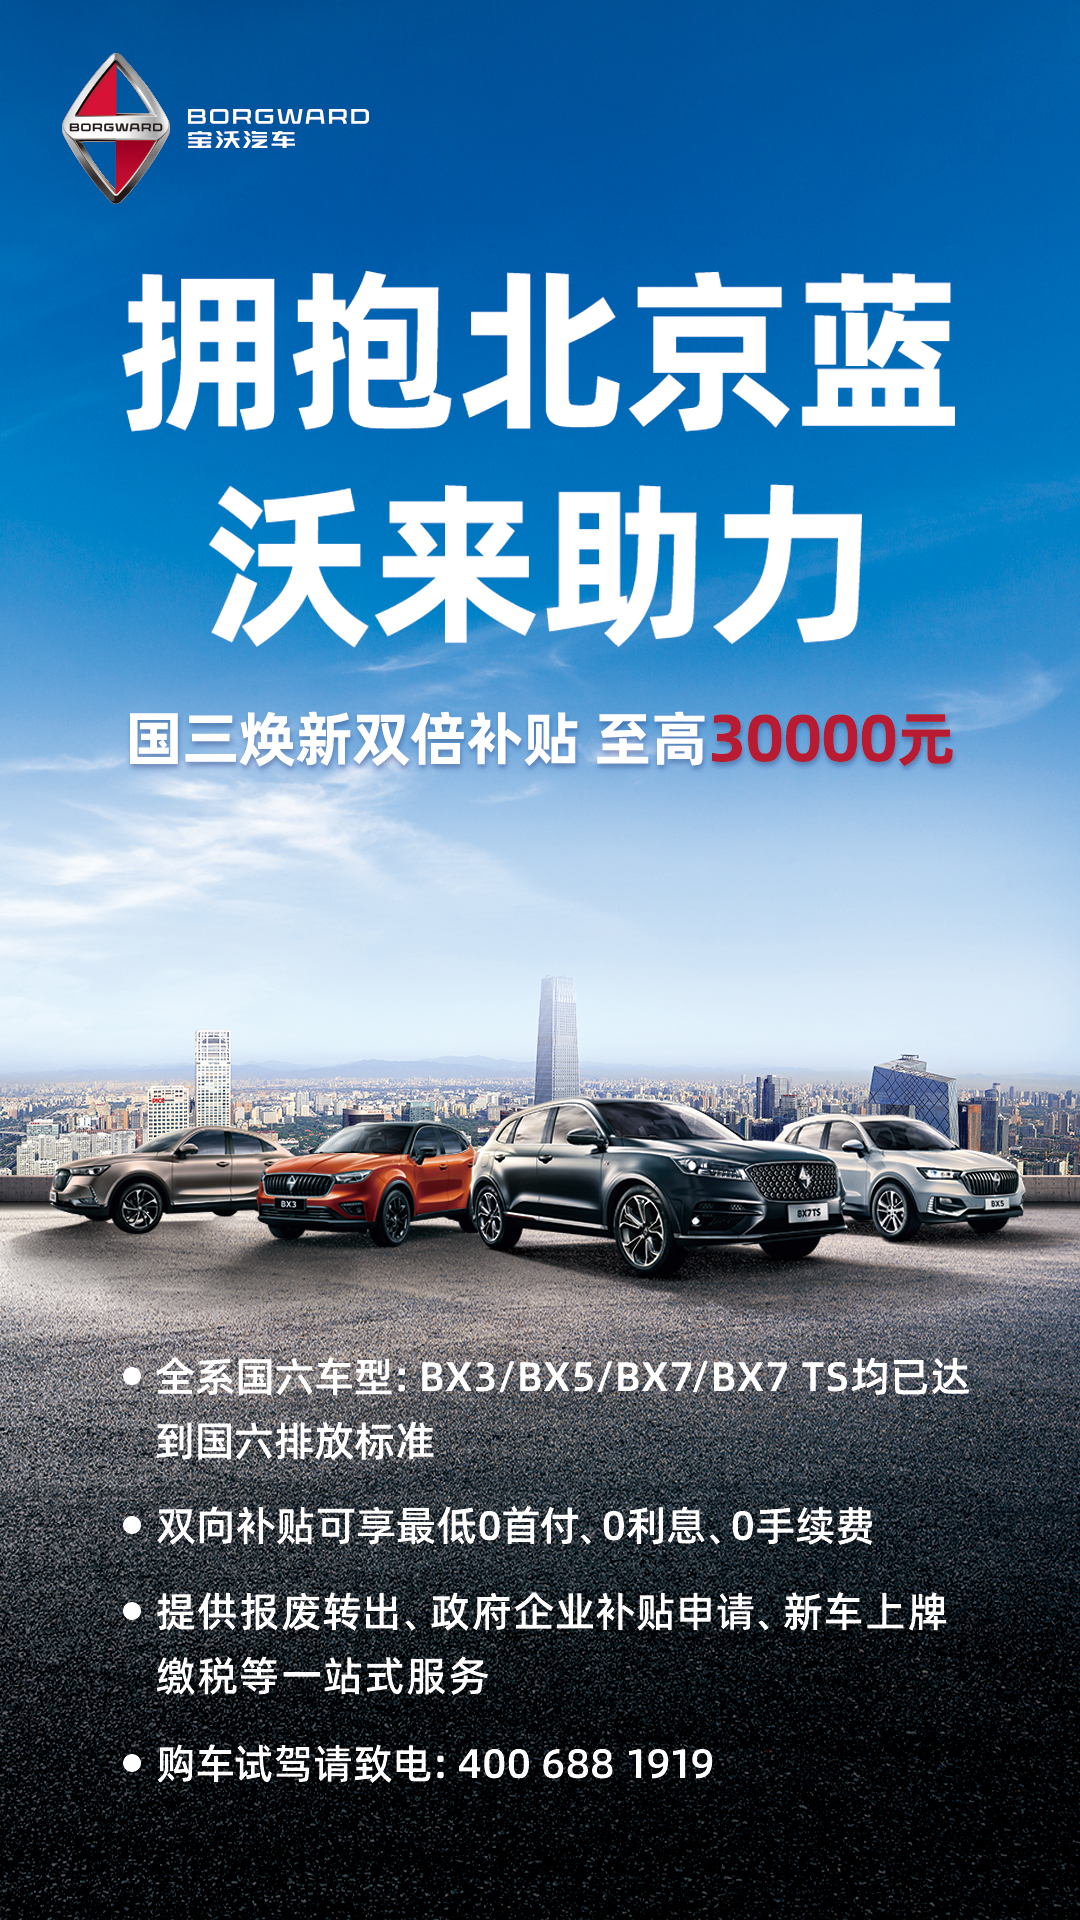 宝沃汽车响应北京国三车型淘汰政策 购车双重优惠高达3万元